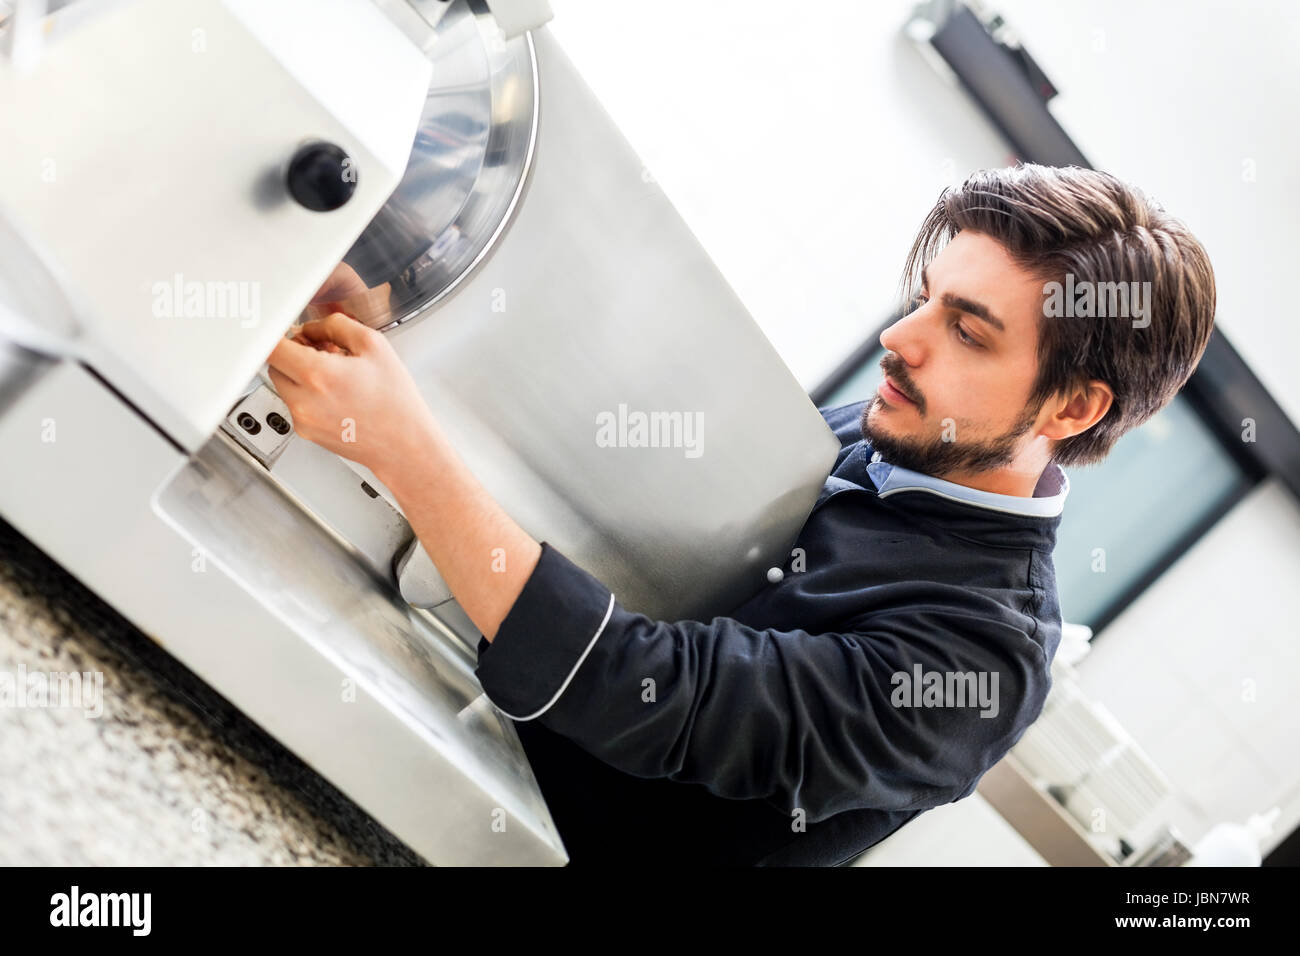 chefkoch schneidet frischen schinken auf der schneidemaschine in der restaurant küche Stock Photo